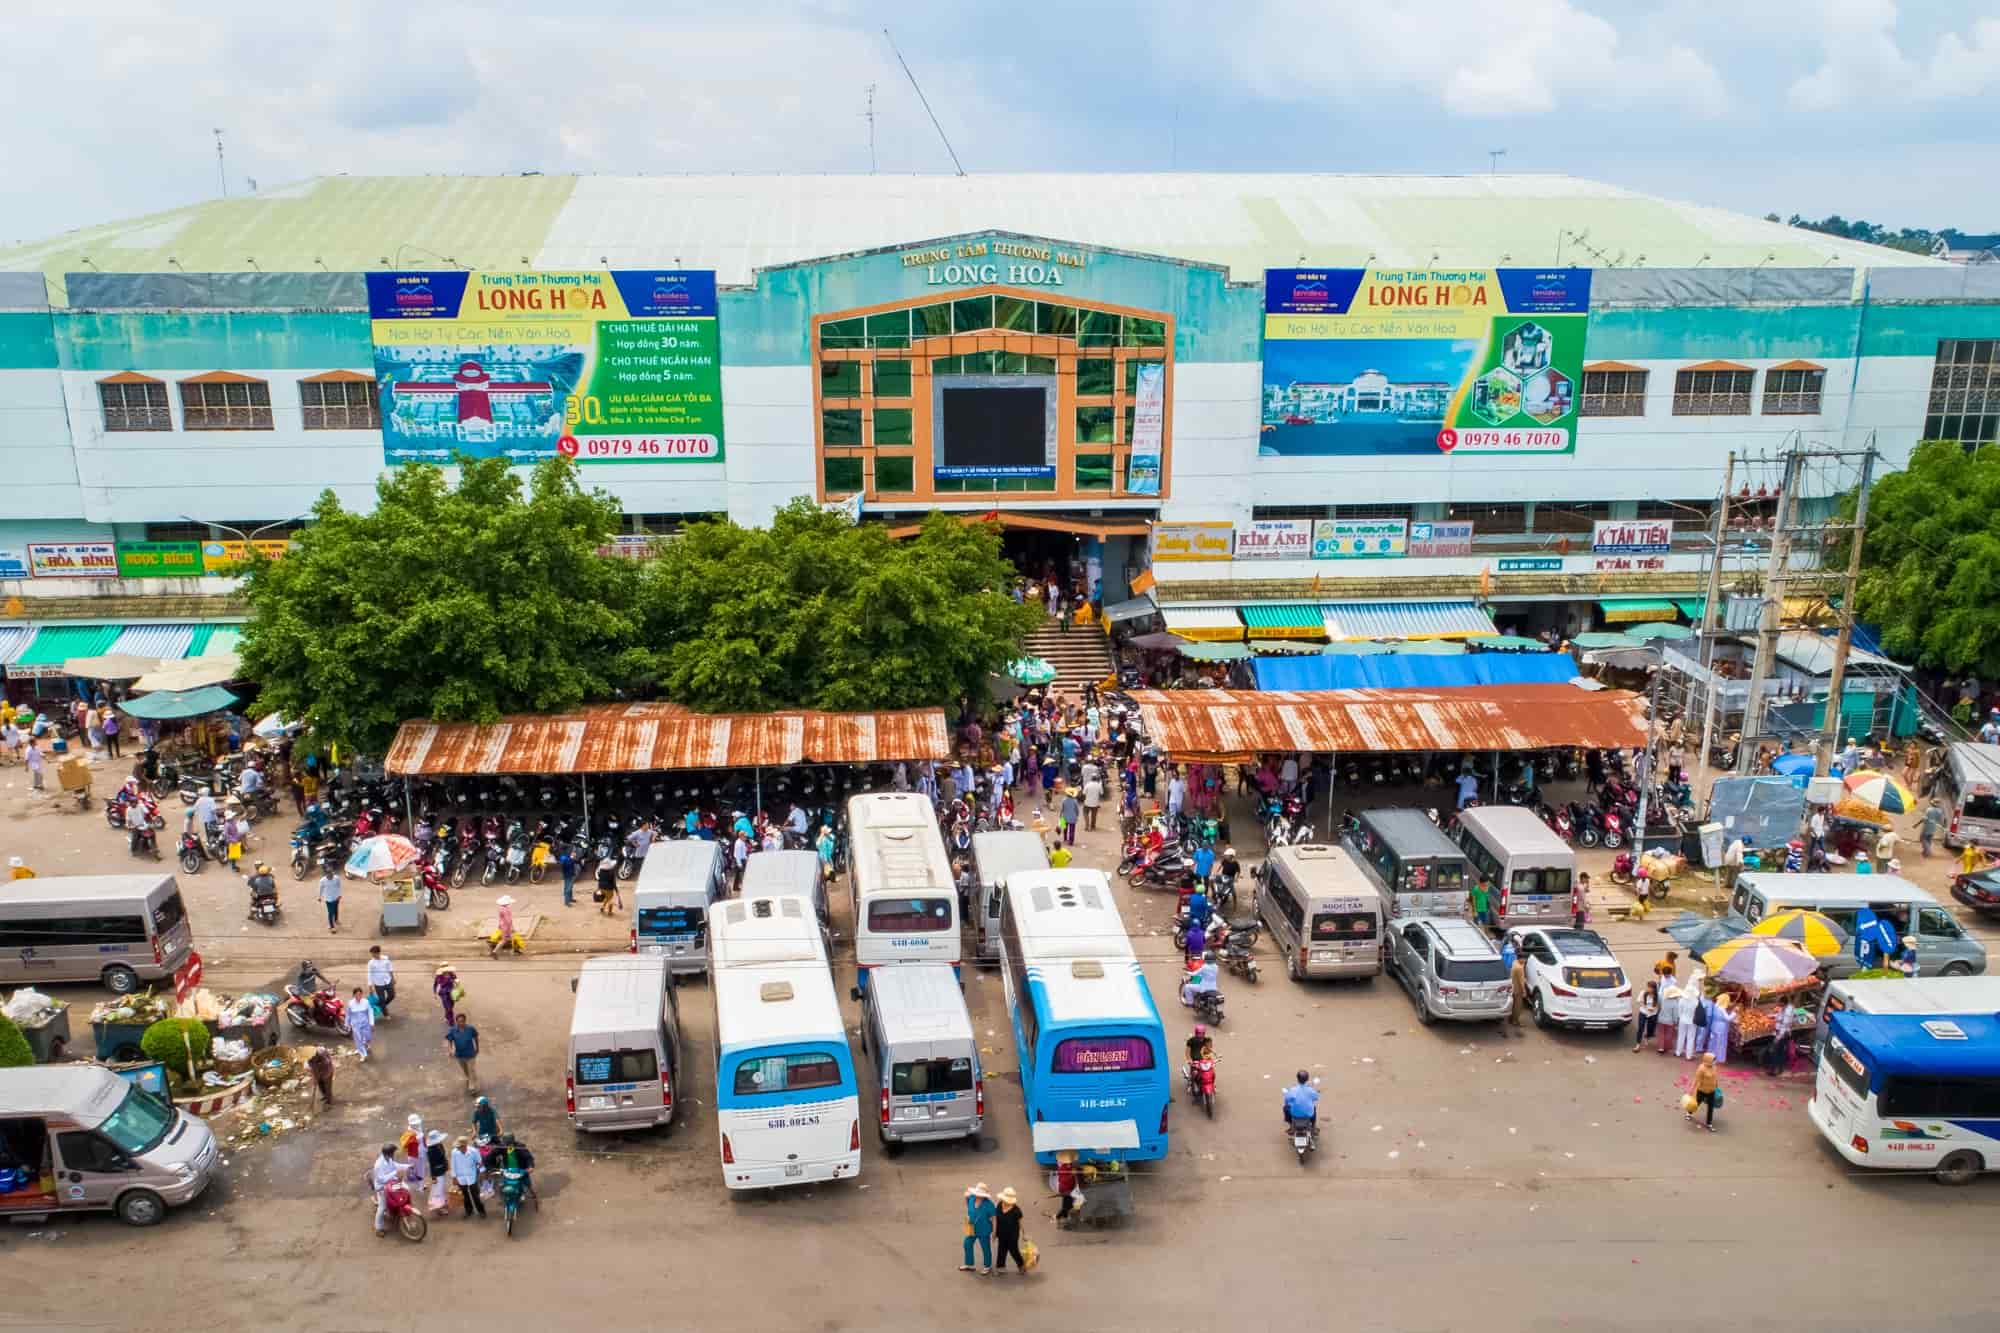 Chợ Long Hoa được xây dựng từ những năm 50 của thế kỷ trước. Nơi đây được xem là trung tâm mua bán hàng hóa, giao thương lớn nhất tỉnh và cũng là một trong những địa điểm tham quan của du khách mỗi khi đến Tây Ninh.